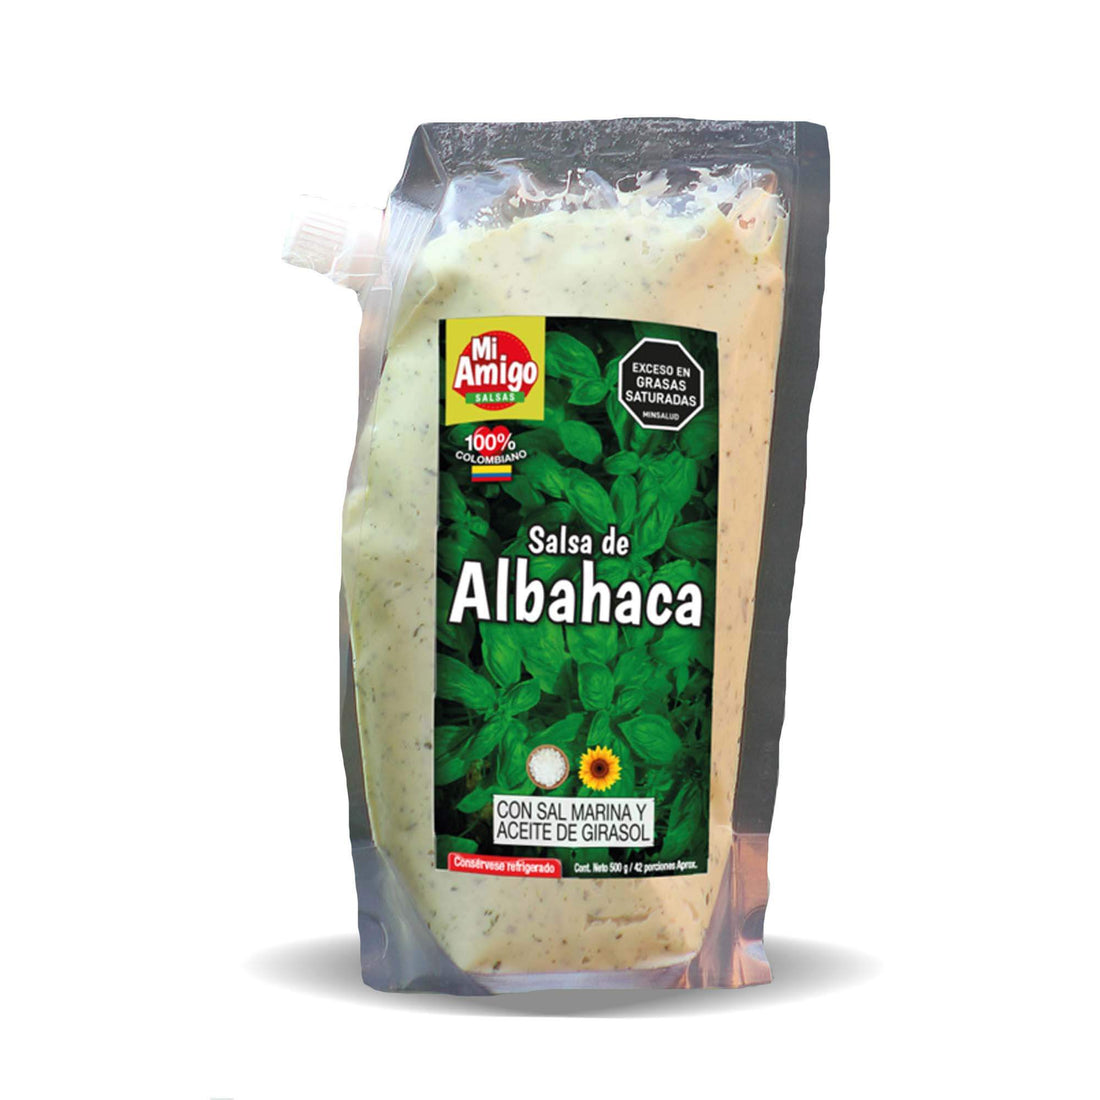 Salsa de Albahaca x 240gr: Fotografía de salsa de albahaca en envase de 240 gramos.